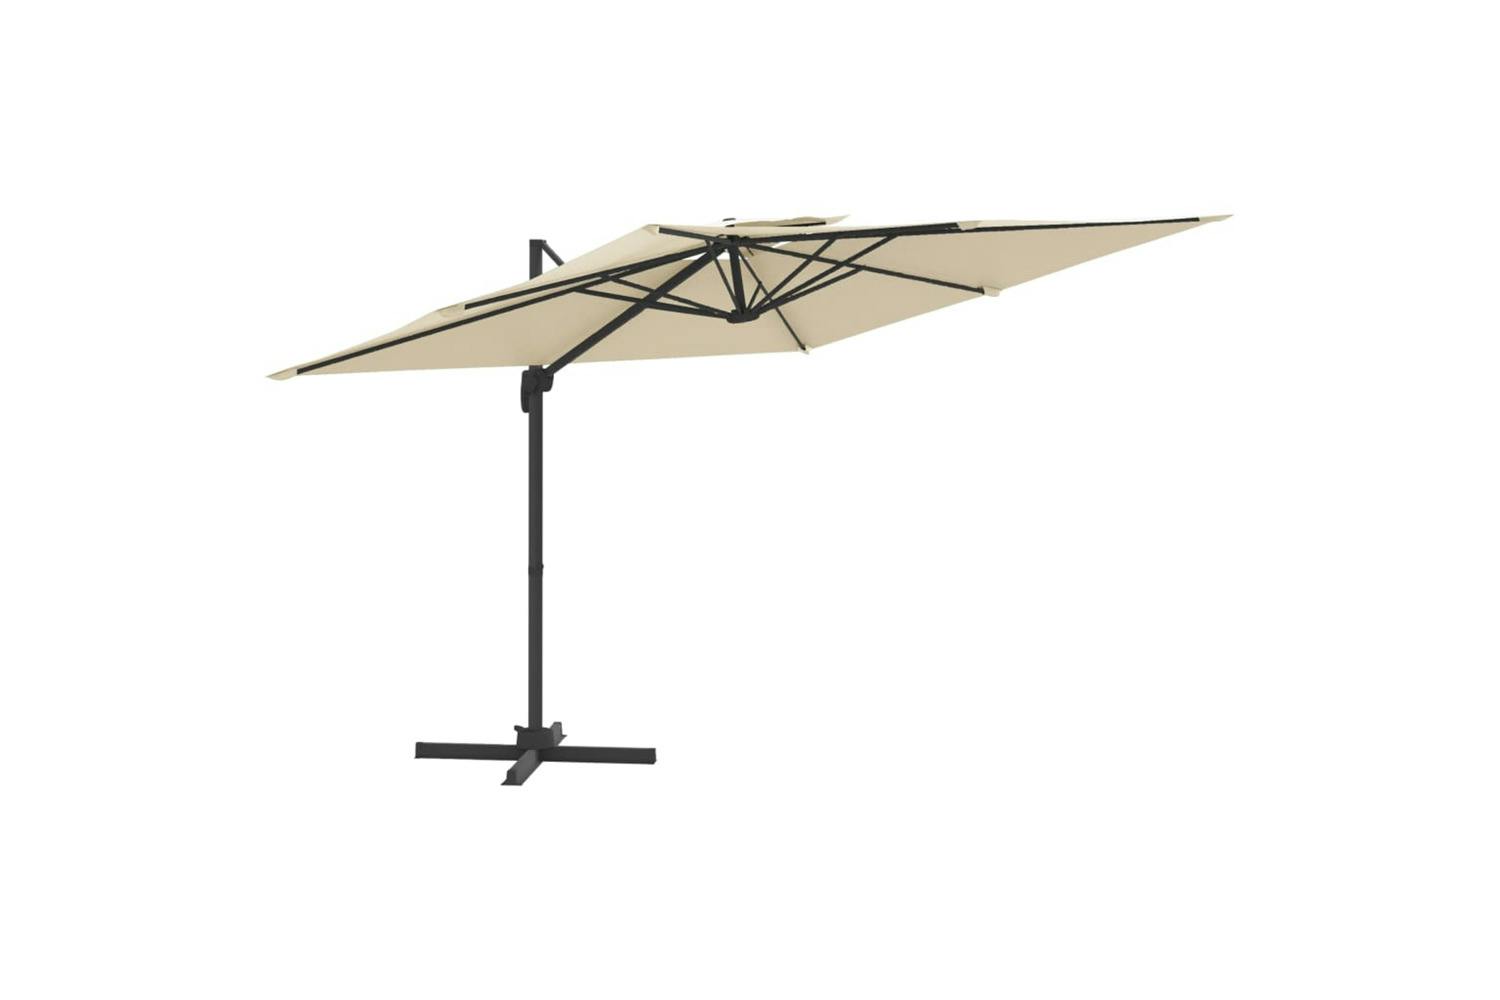 Vidaxl 319944 Double Top Cantilever Umbrella Sand White 400x300 Cm